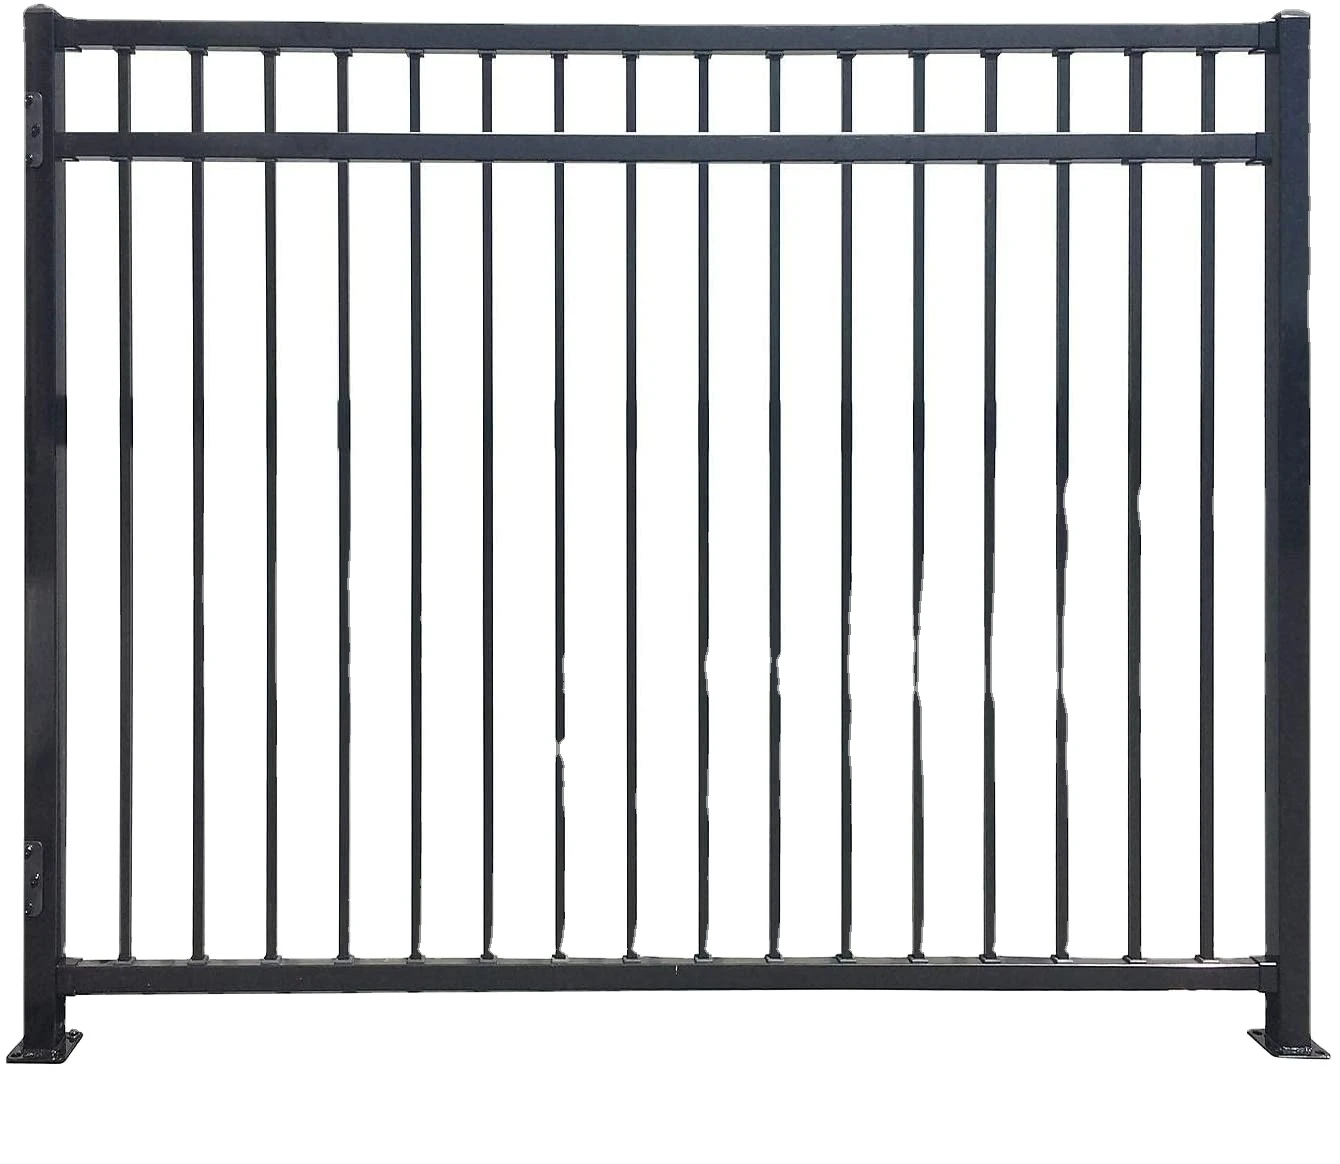 Expandable horizontal plexiglass square tube metal fence panels for sale